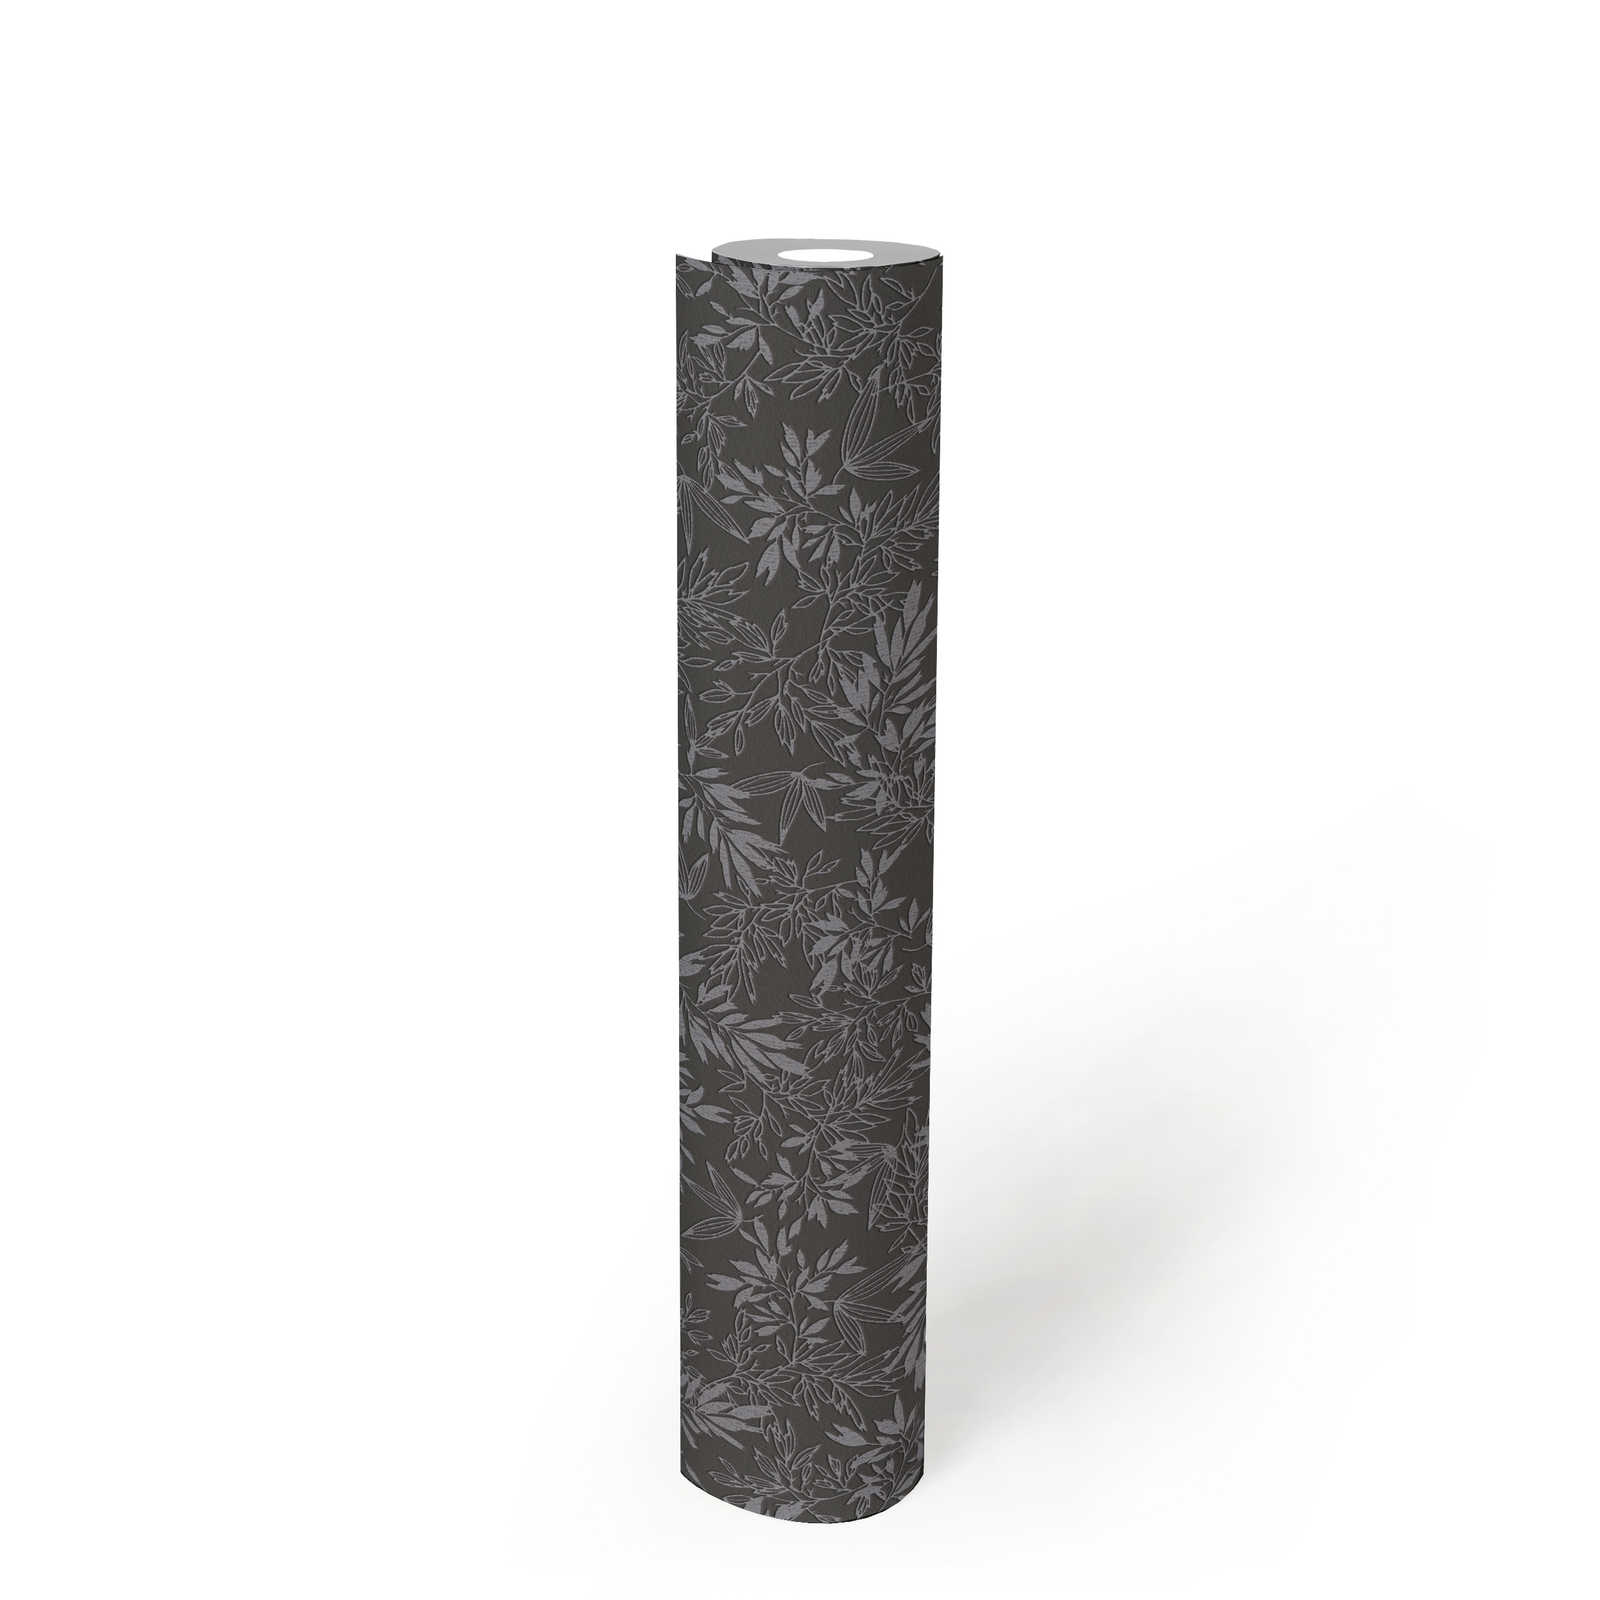             Tapete mit Blätter Motiv und Schaumstruktur – Schwarz, Grau
        